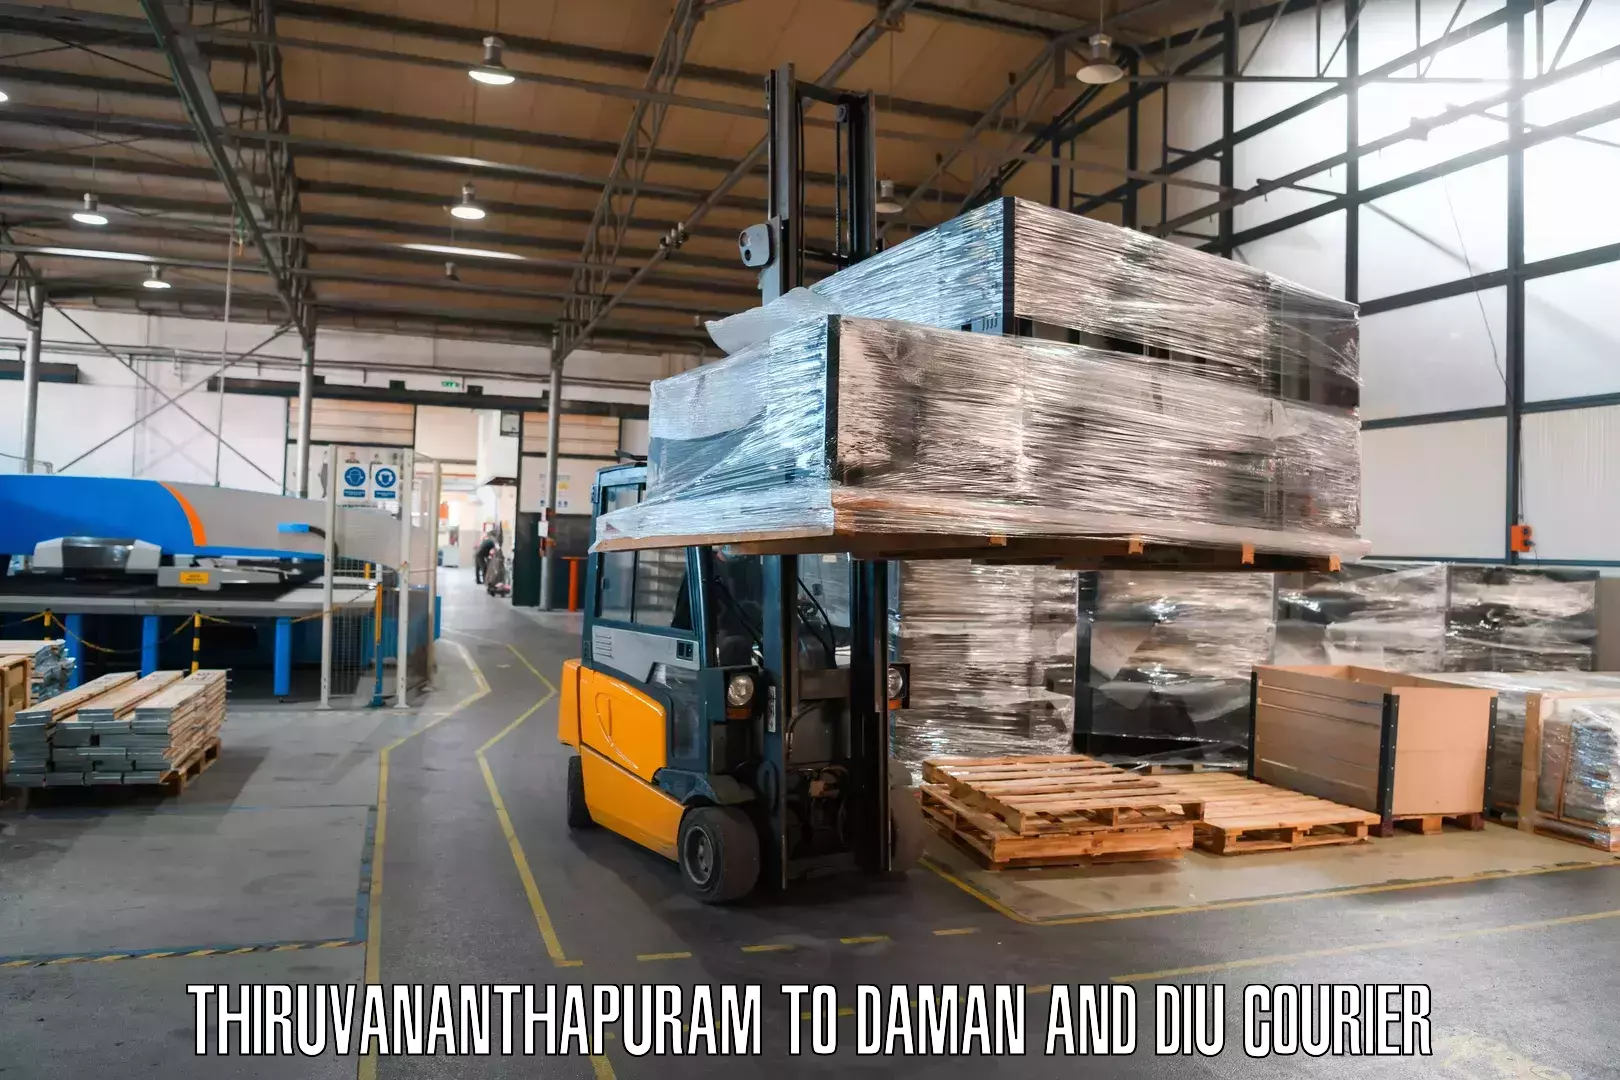 Pharmaceutical courier Thiruvananthapuram to Diu